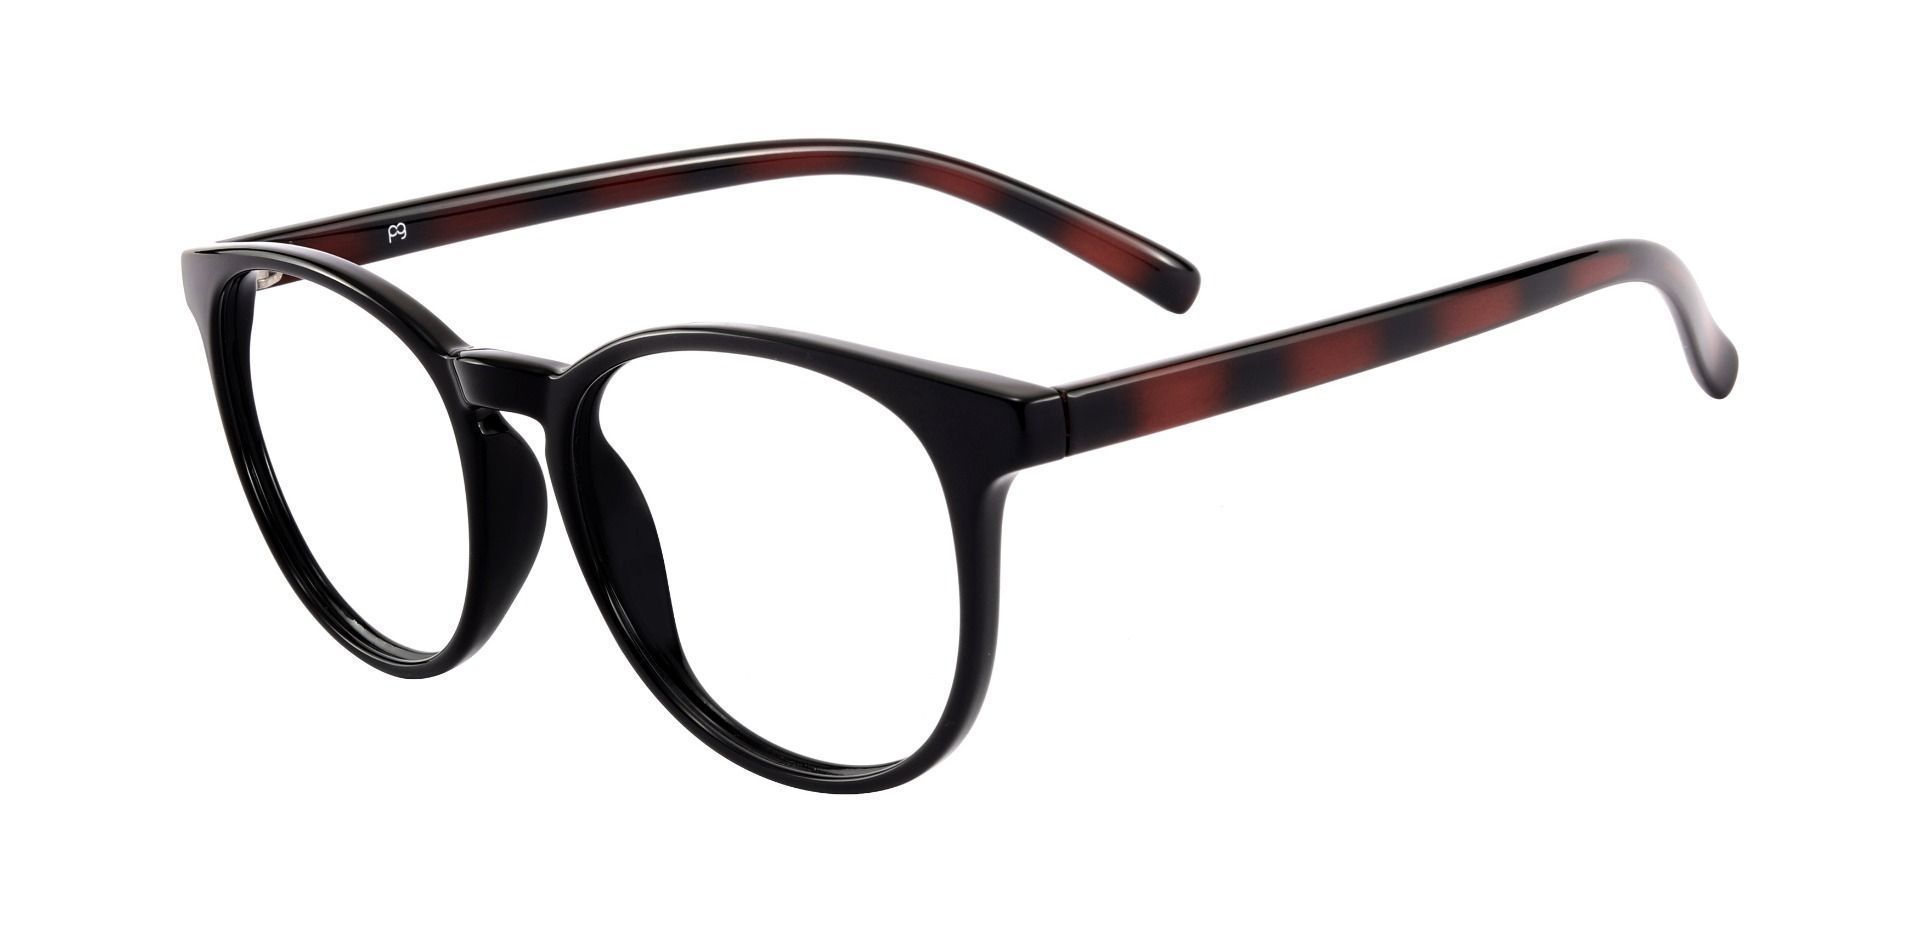 Corbett Oval Non-Rx Glasses - Black